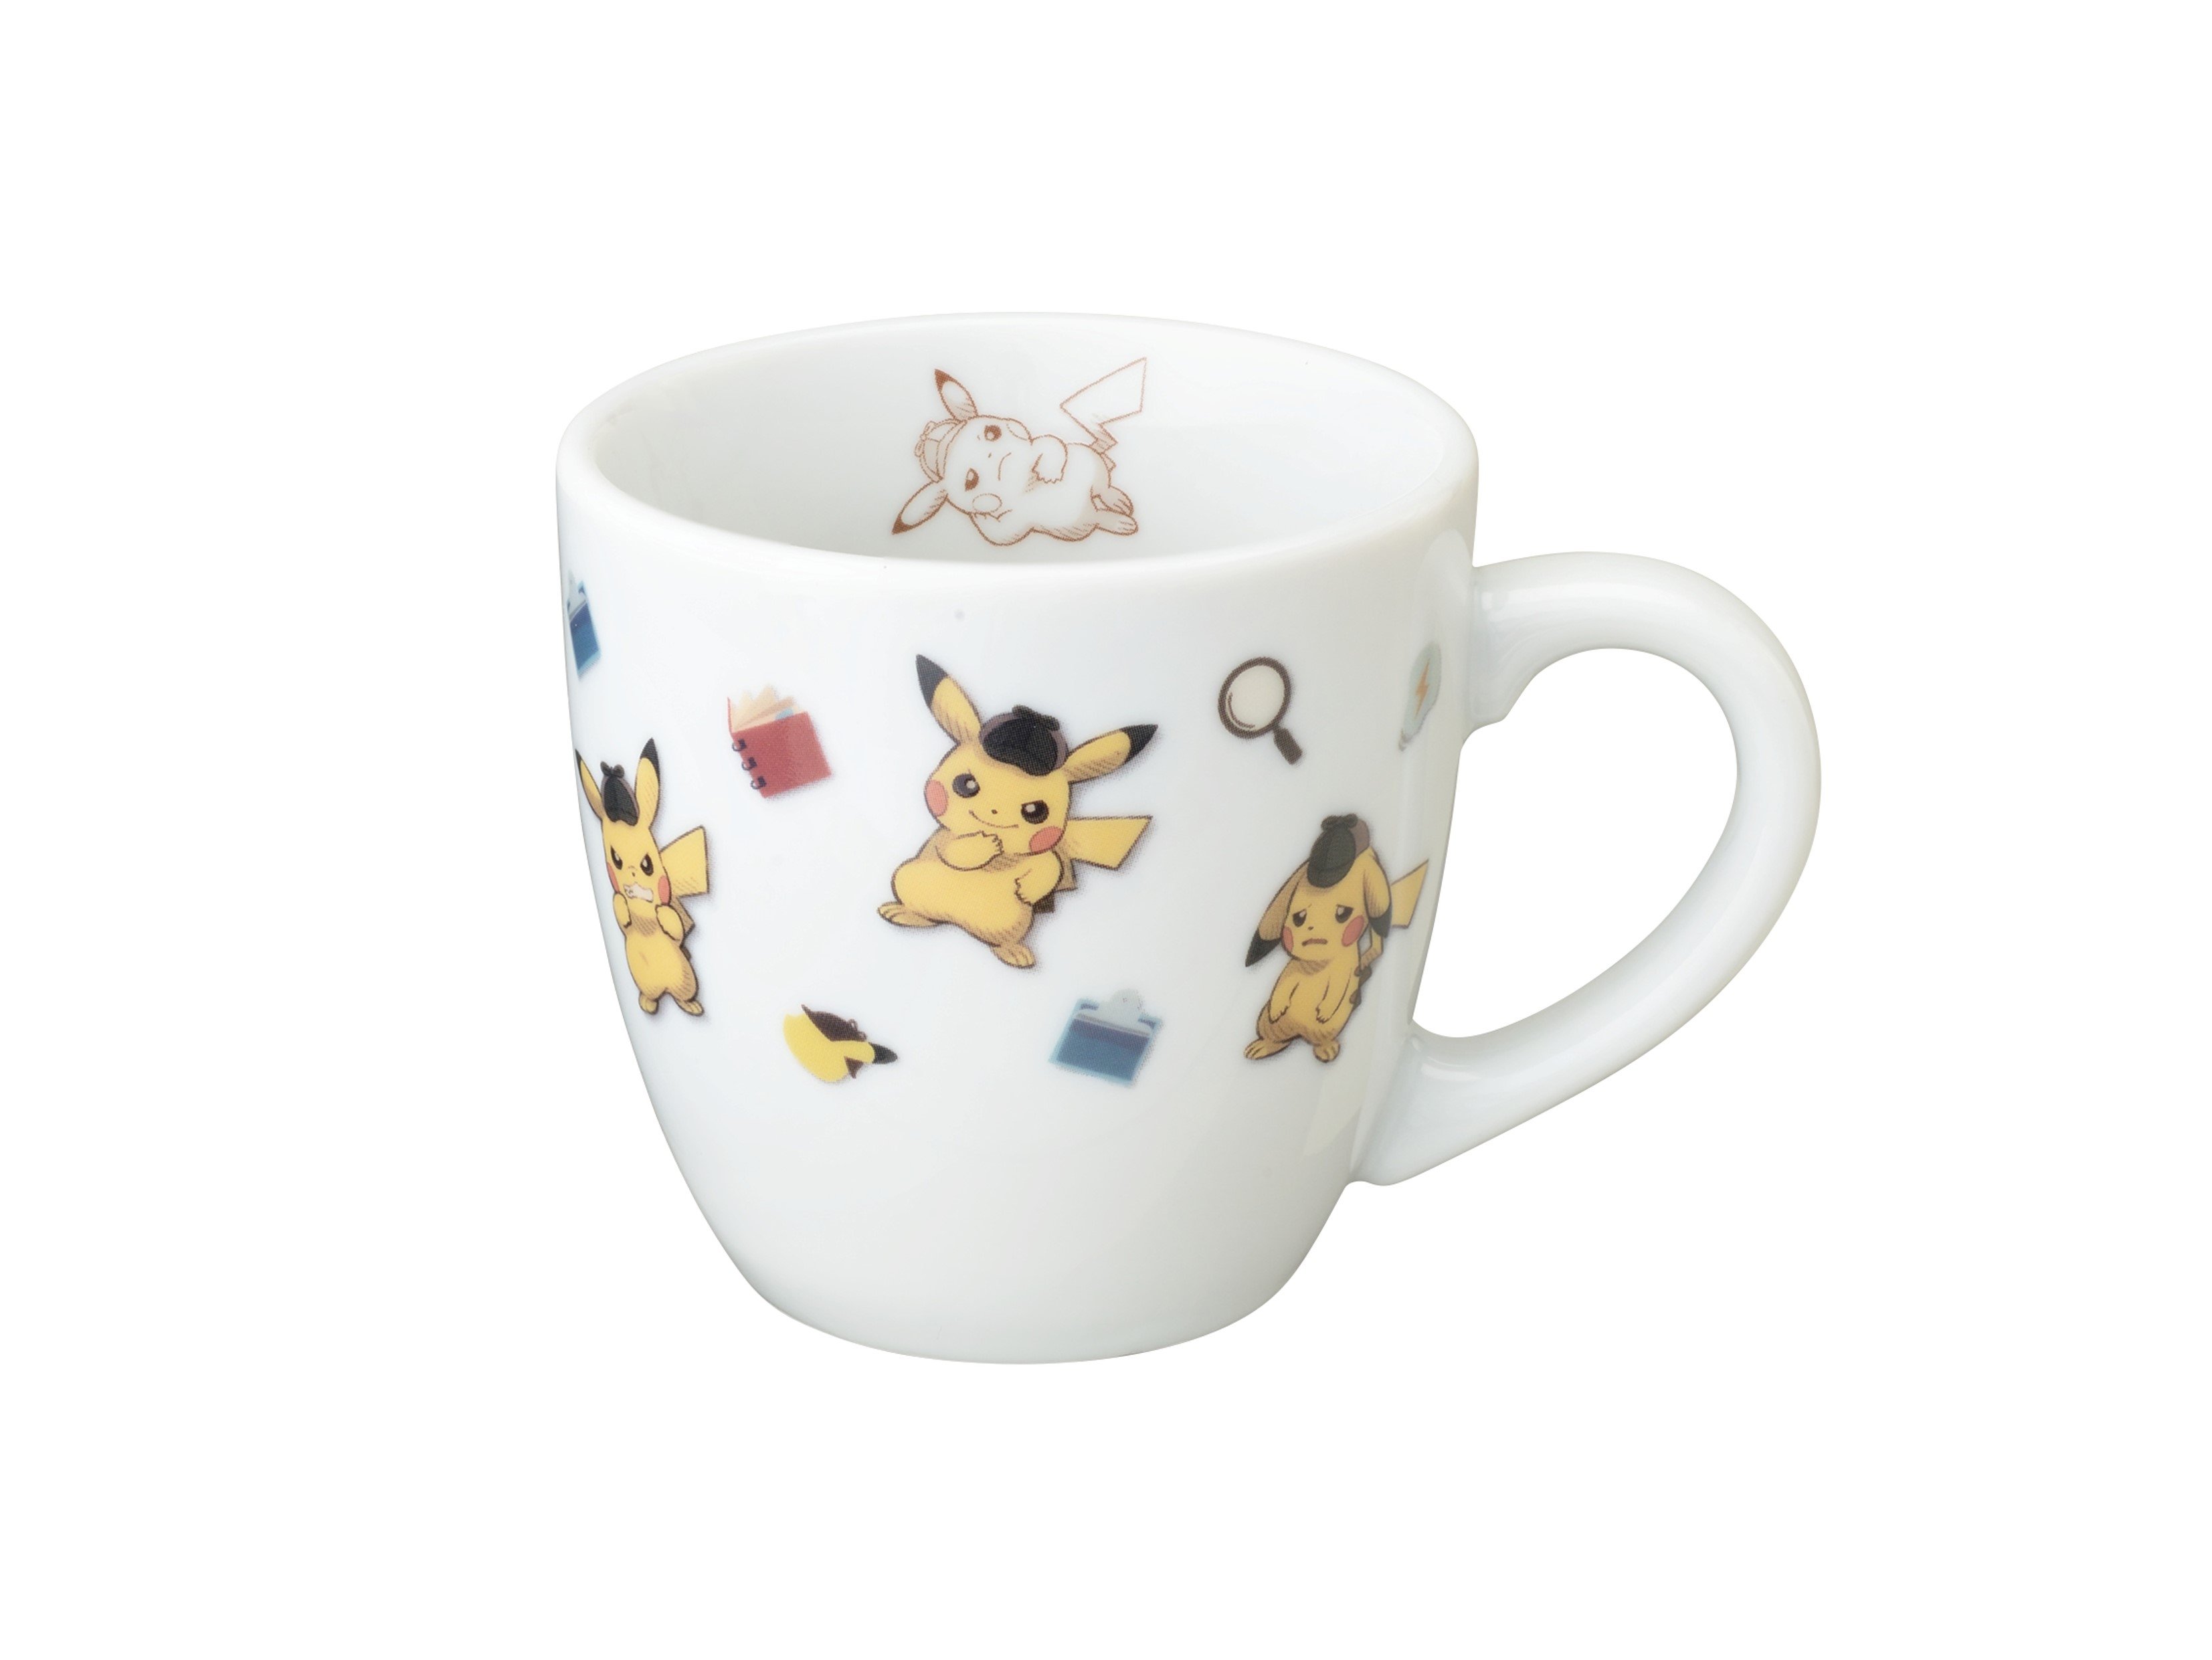 Detective Pikachu mug